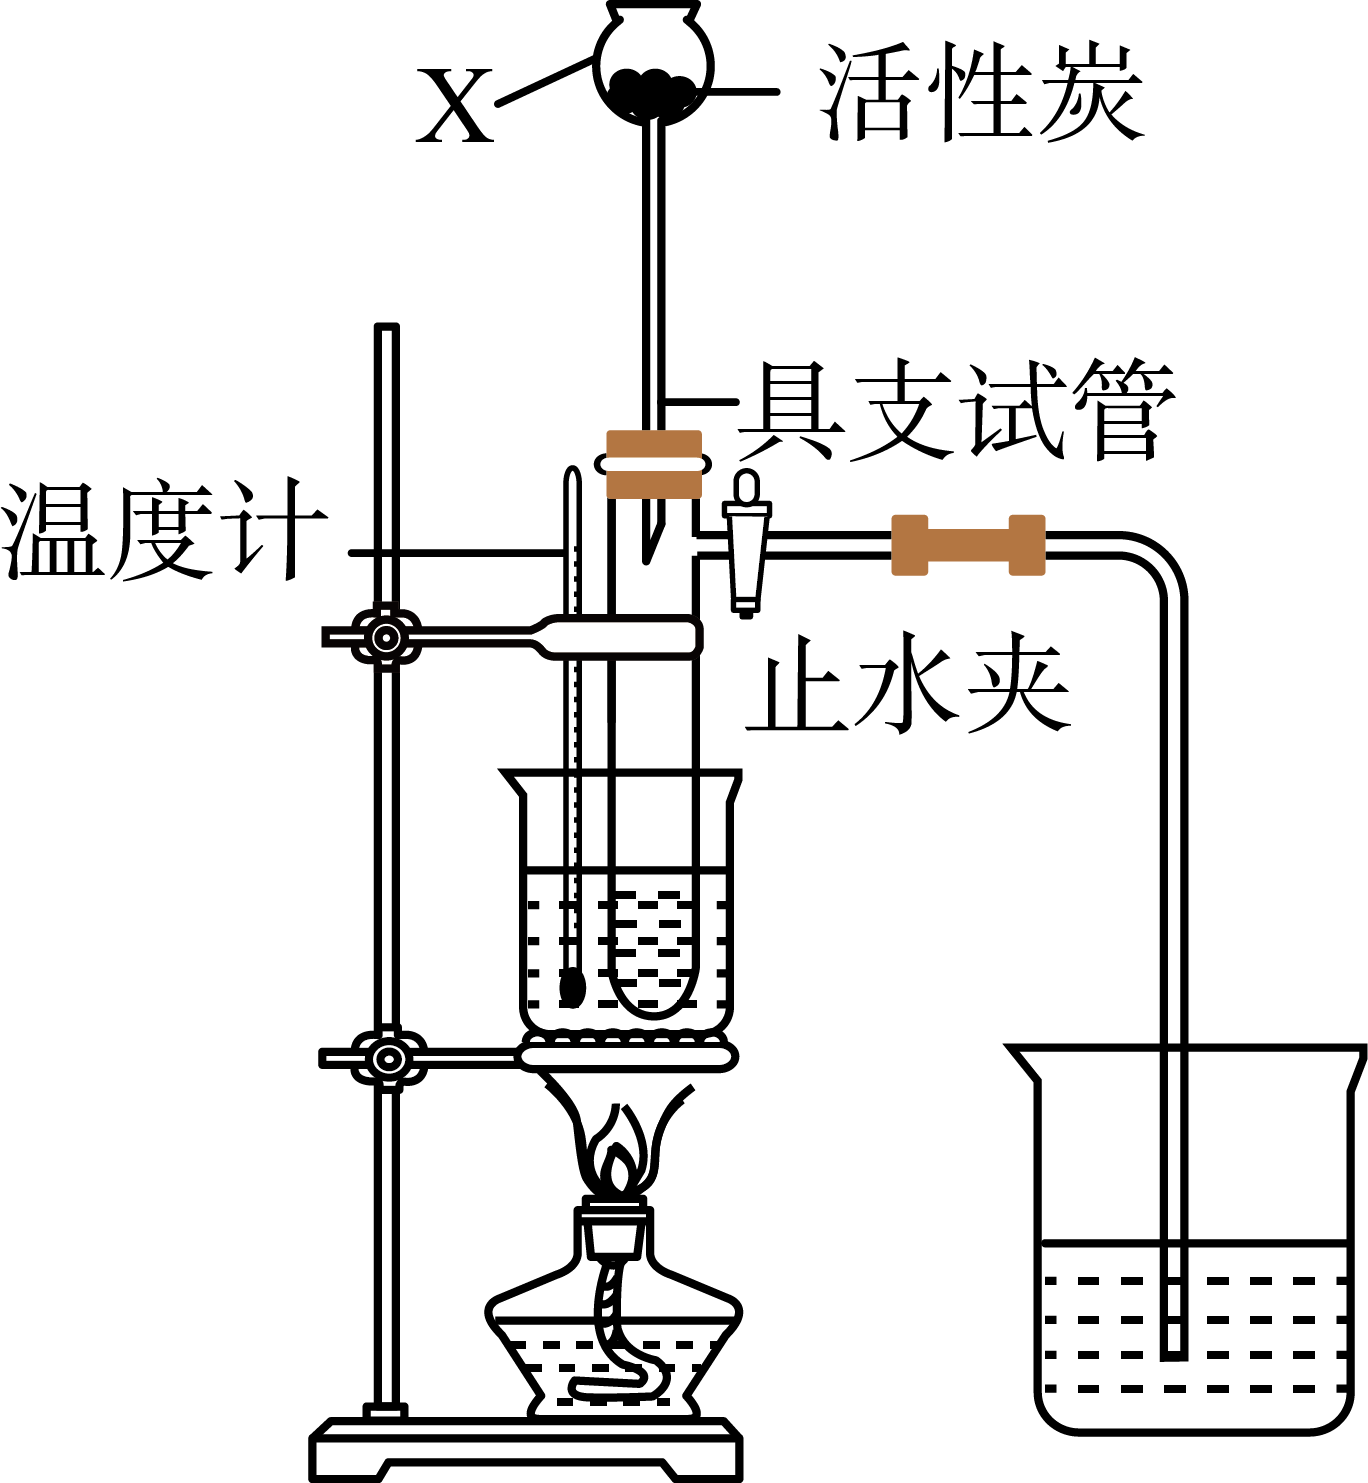 实验室制备硝基苯的反应装置如图所示,下列关于实验操作或叙述错误的